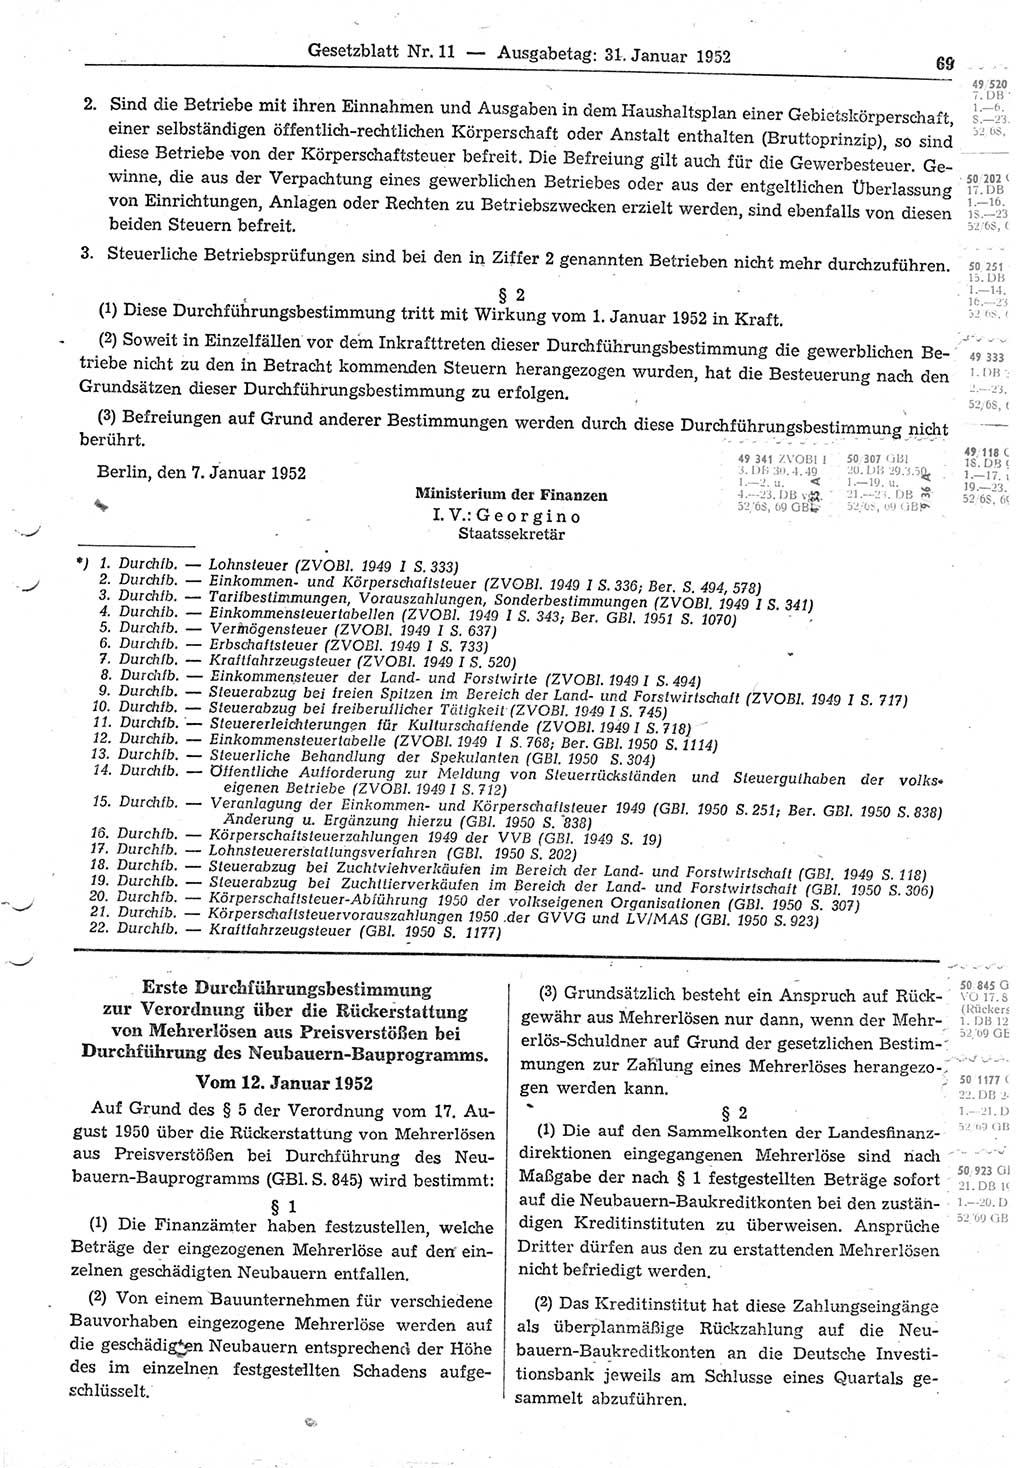 Gesetzblatt (GBl.) der Deutschen Demokratischen Republik (DDR) 1952, Seite 69 (GBl. DDR 1952, S. 69)